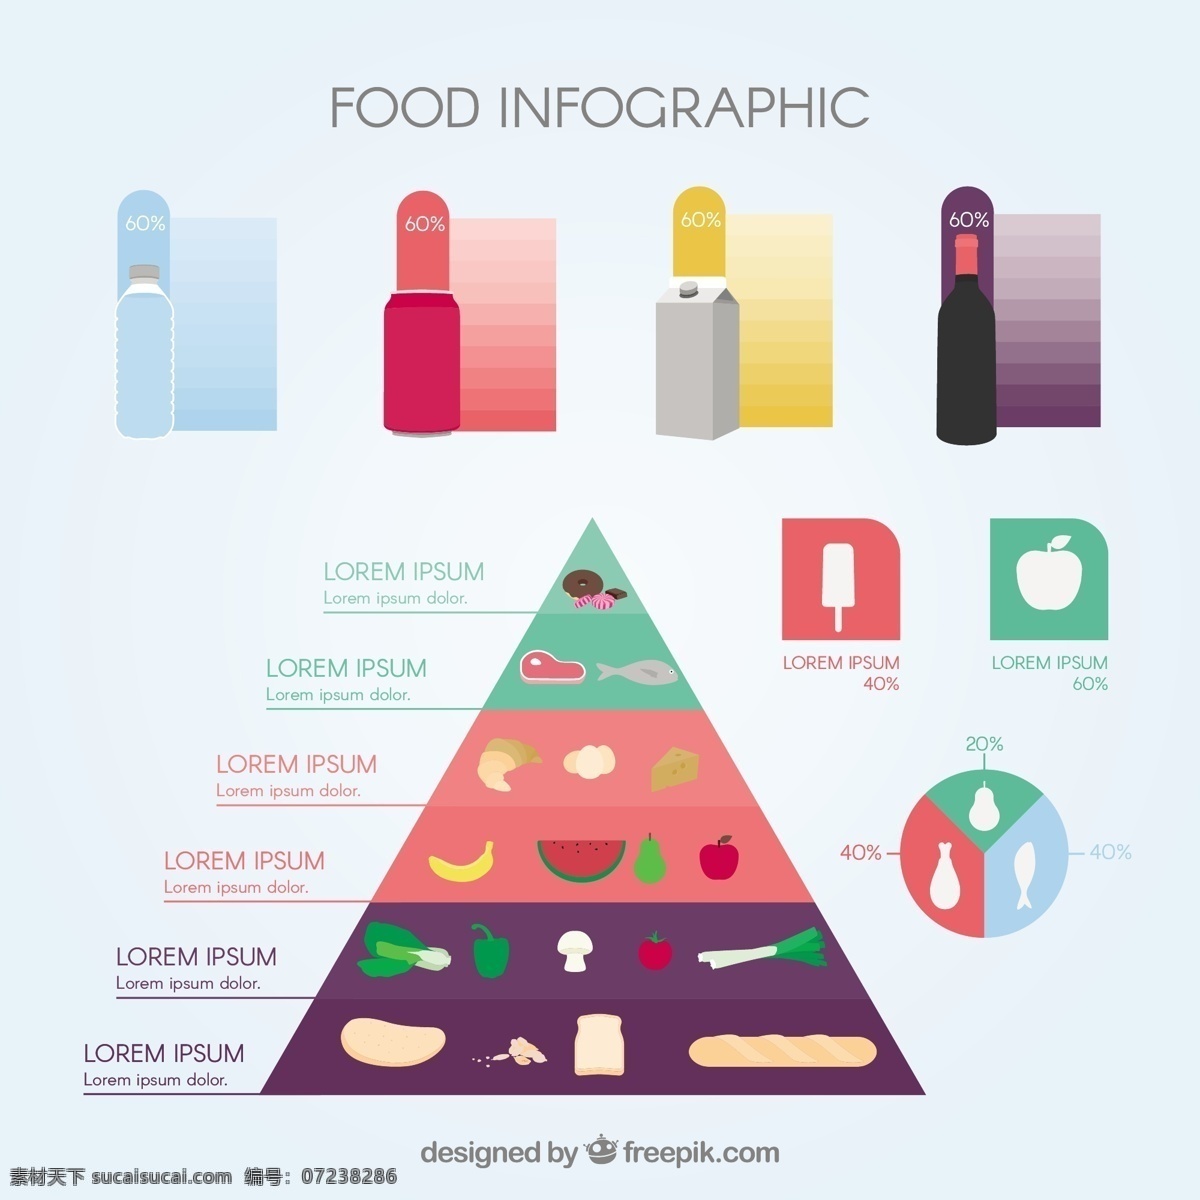 营养 金字塔 图表 食品 模板 图形 蔬菜 水果 烹饪 工艺 图表模板 数据 信息 健康信息 成长 健康食品 信息图形 饮食